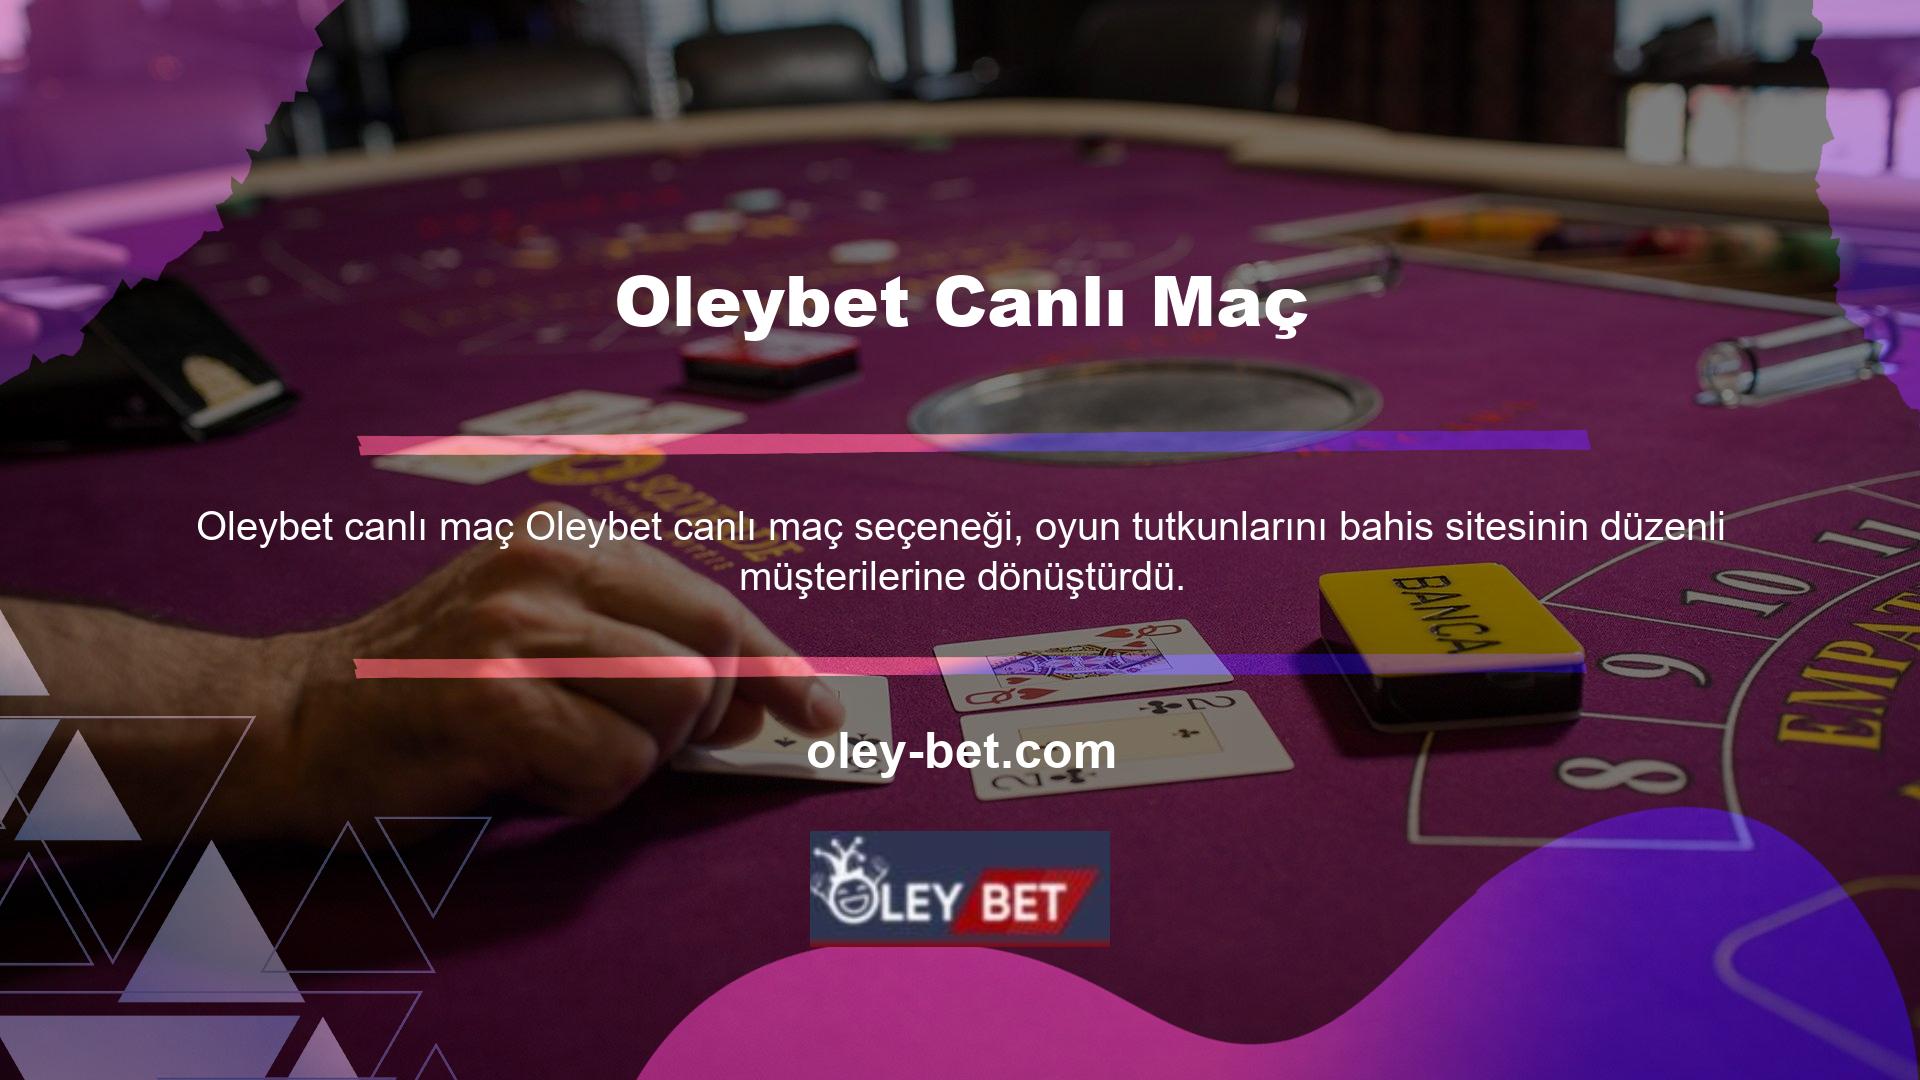 Oleybet TV'de canlı uluslararası maçları ve spor etkinliklerini ücretsiz olarak yayınlamakta ve web sitesinde aktif içerik yayınlamaktadır